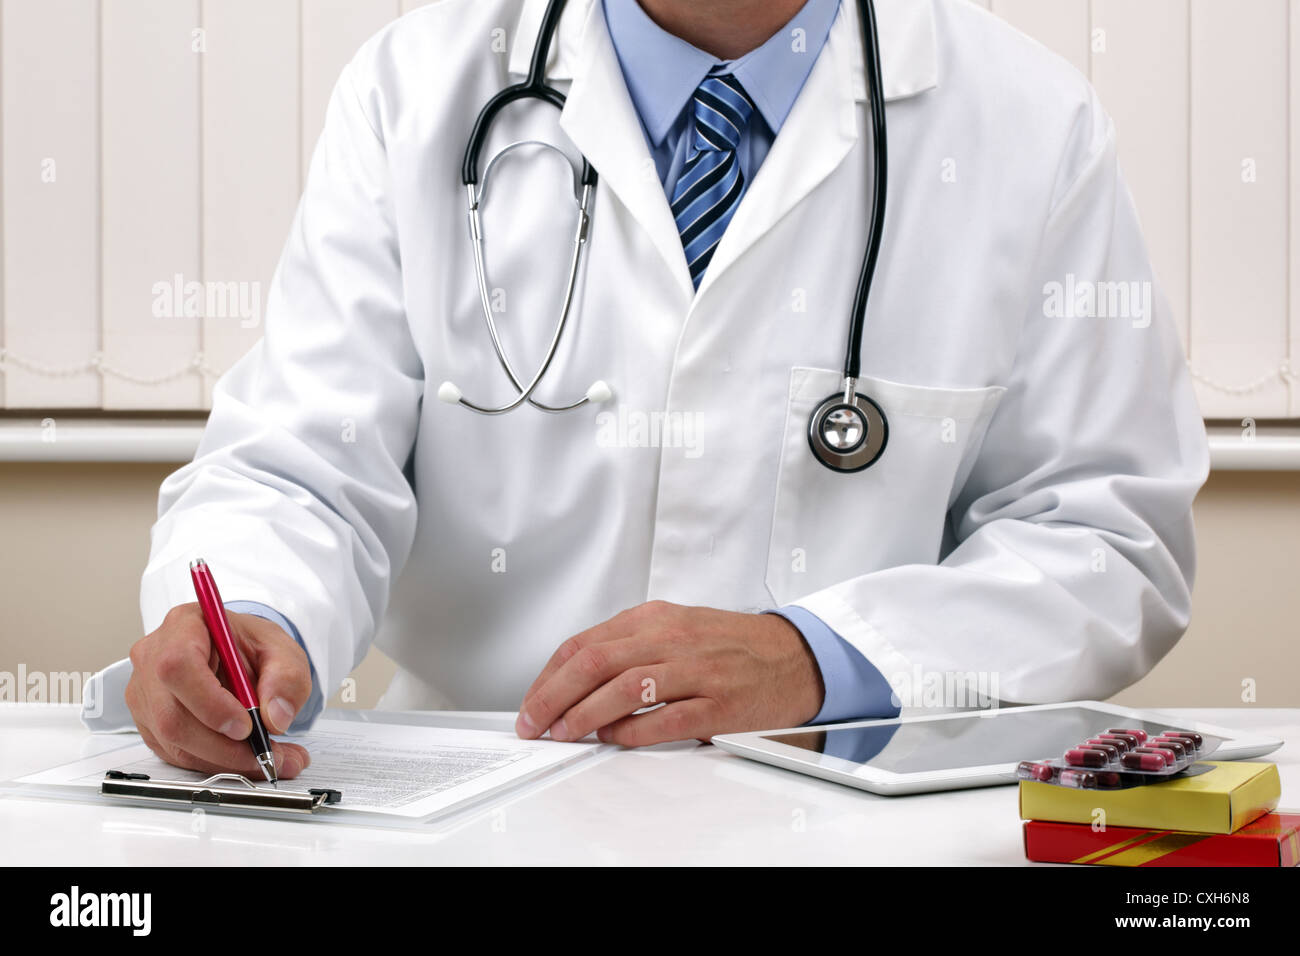 Medico iscritto una prescrizione medica o note di esame Foto Stock